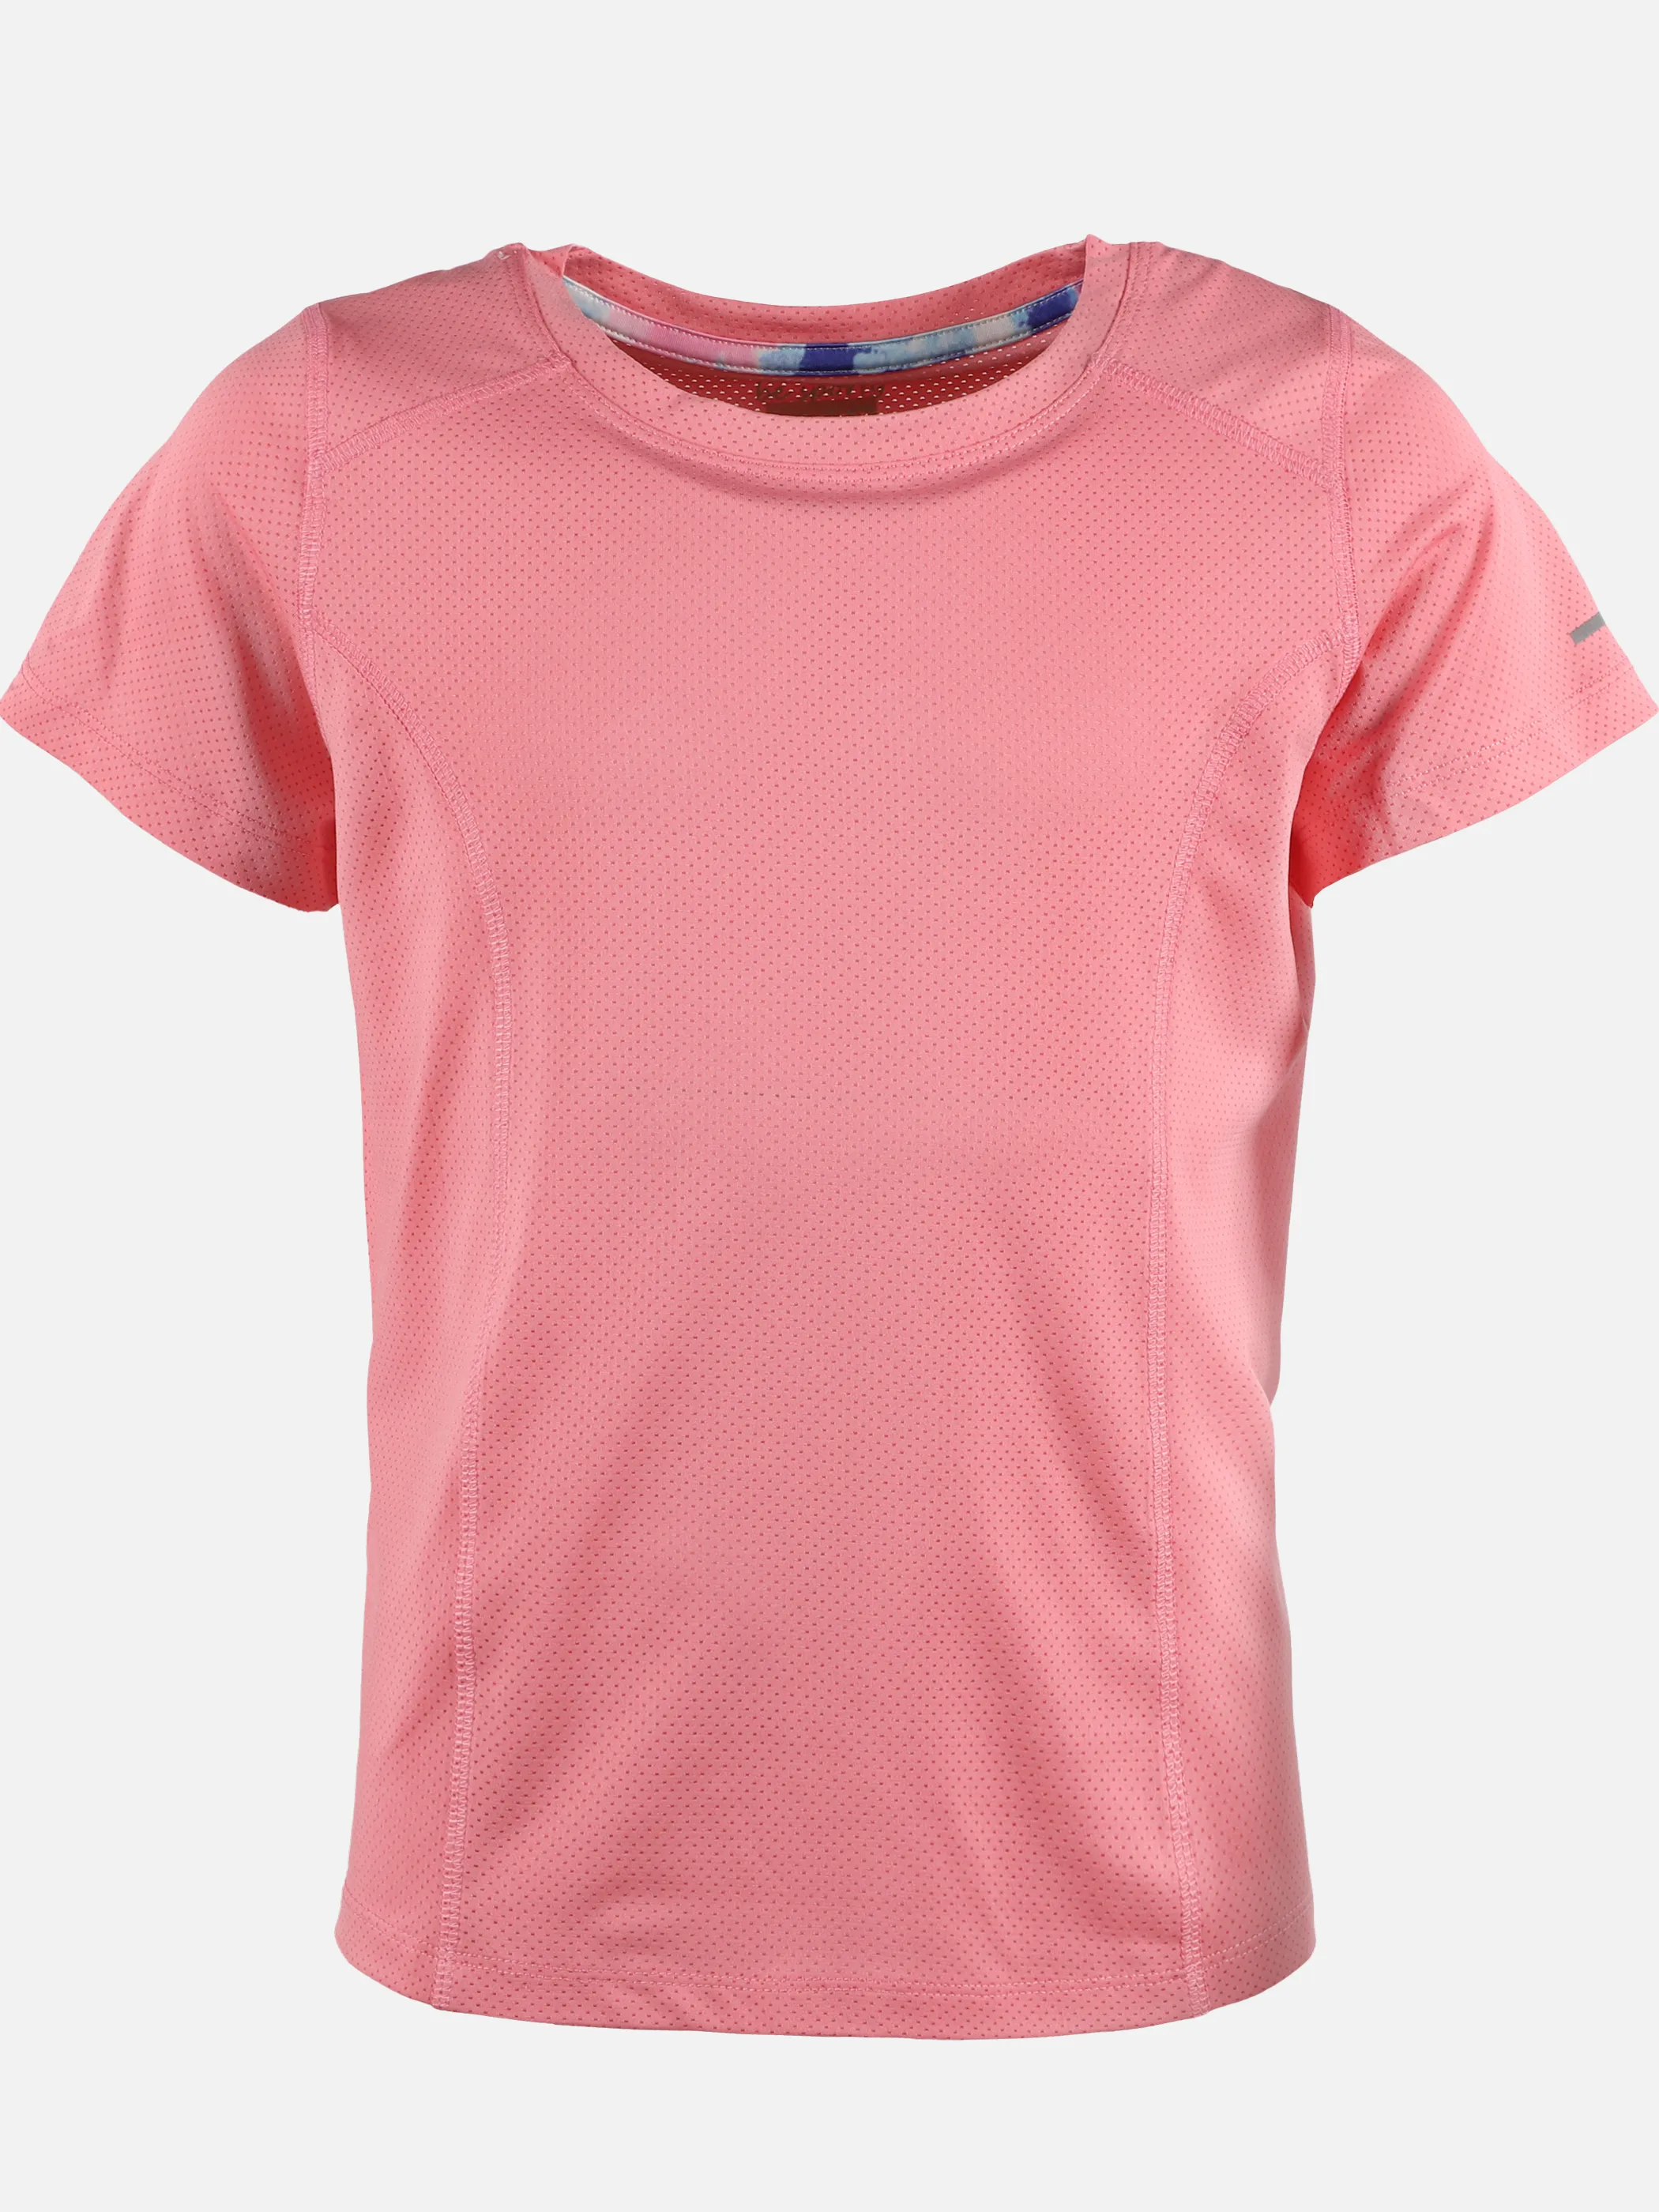 Stop + Go TG-Sport-T-Shirt Rosa 890053 15-1822TCX 1